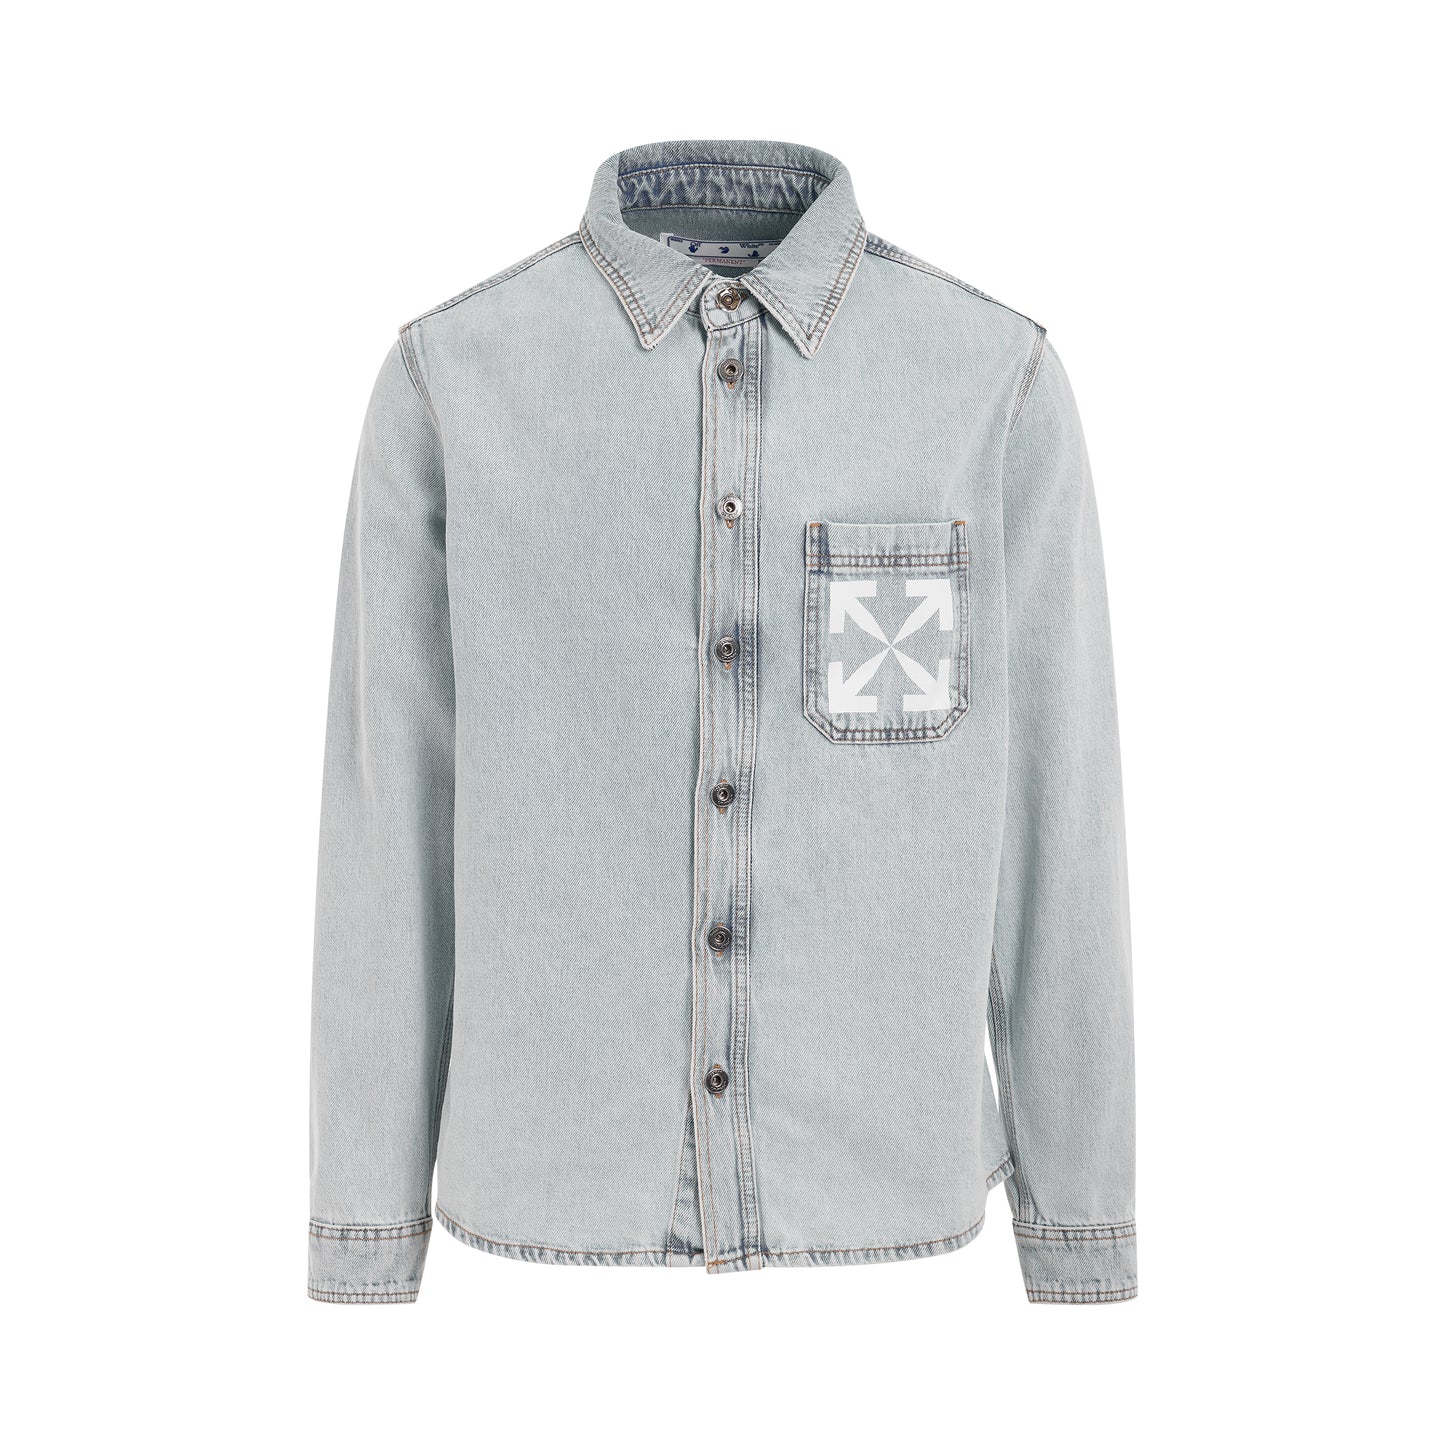 Single Arrow Denim Shirt in Bleach Blue/White